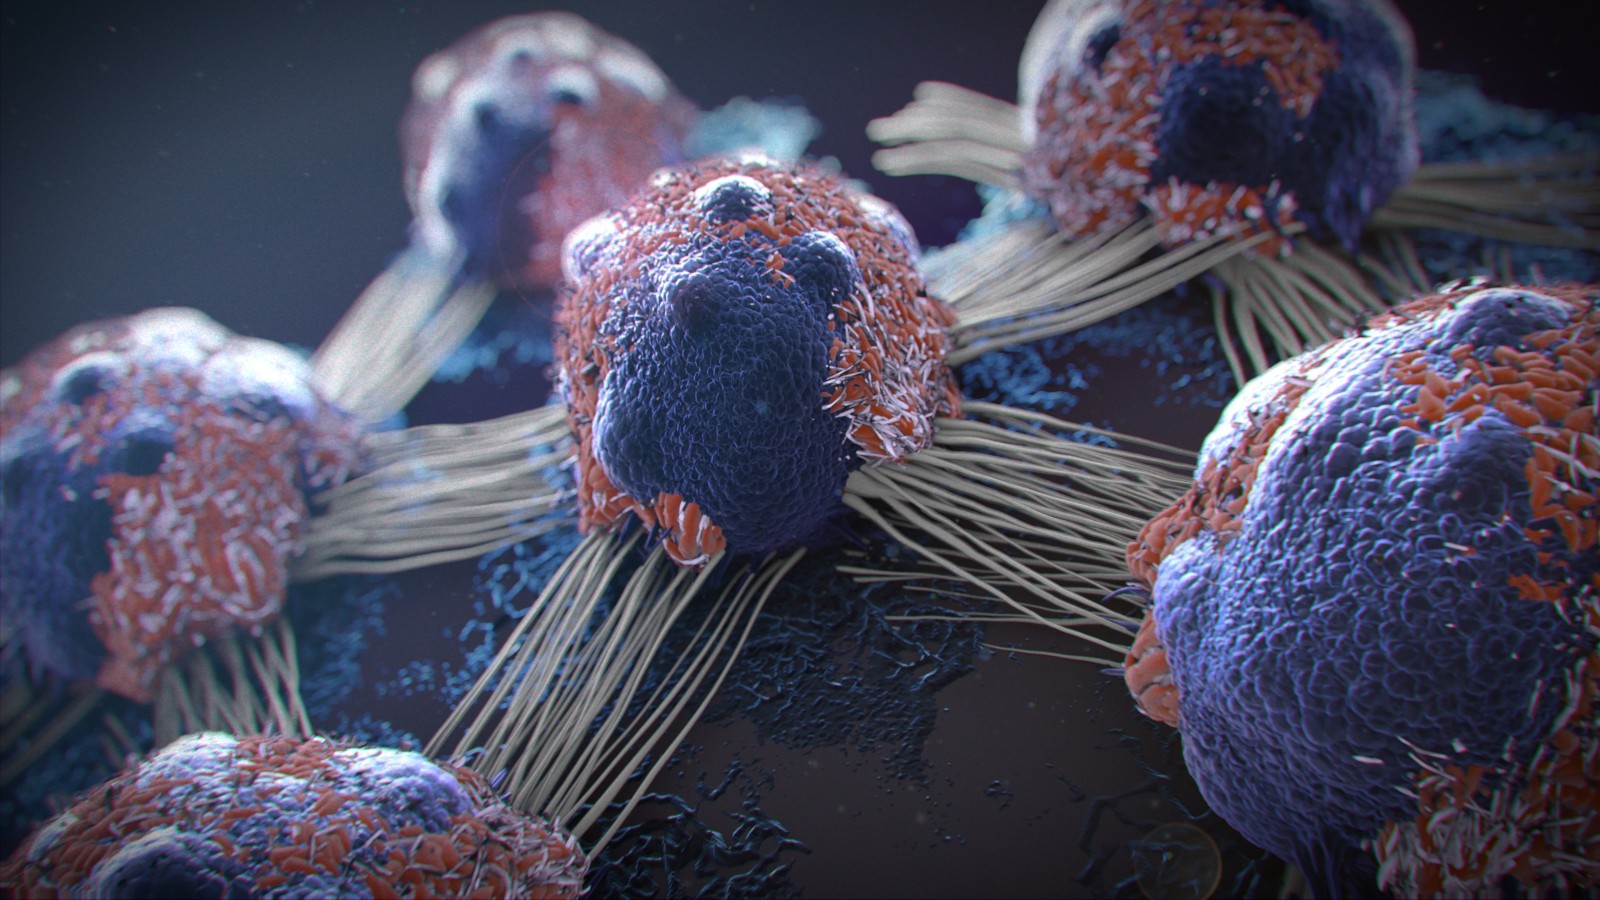 Photo of cancer cells by Javier Regueiro via Shutterstock.com